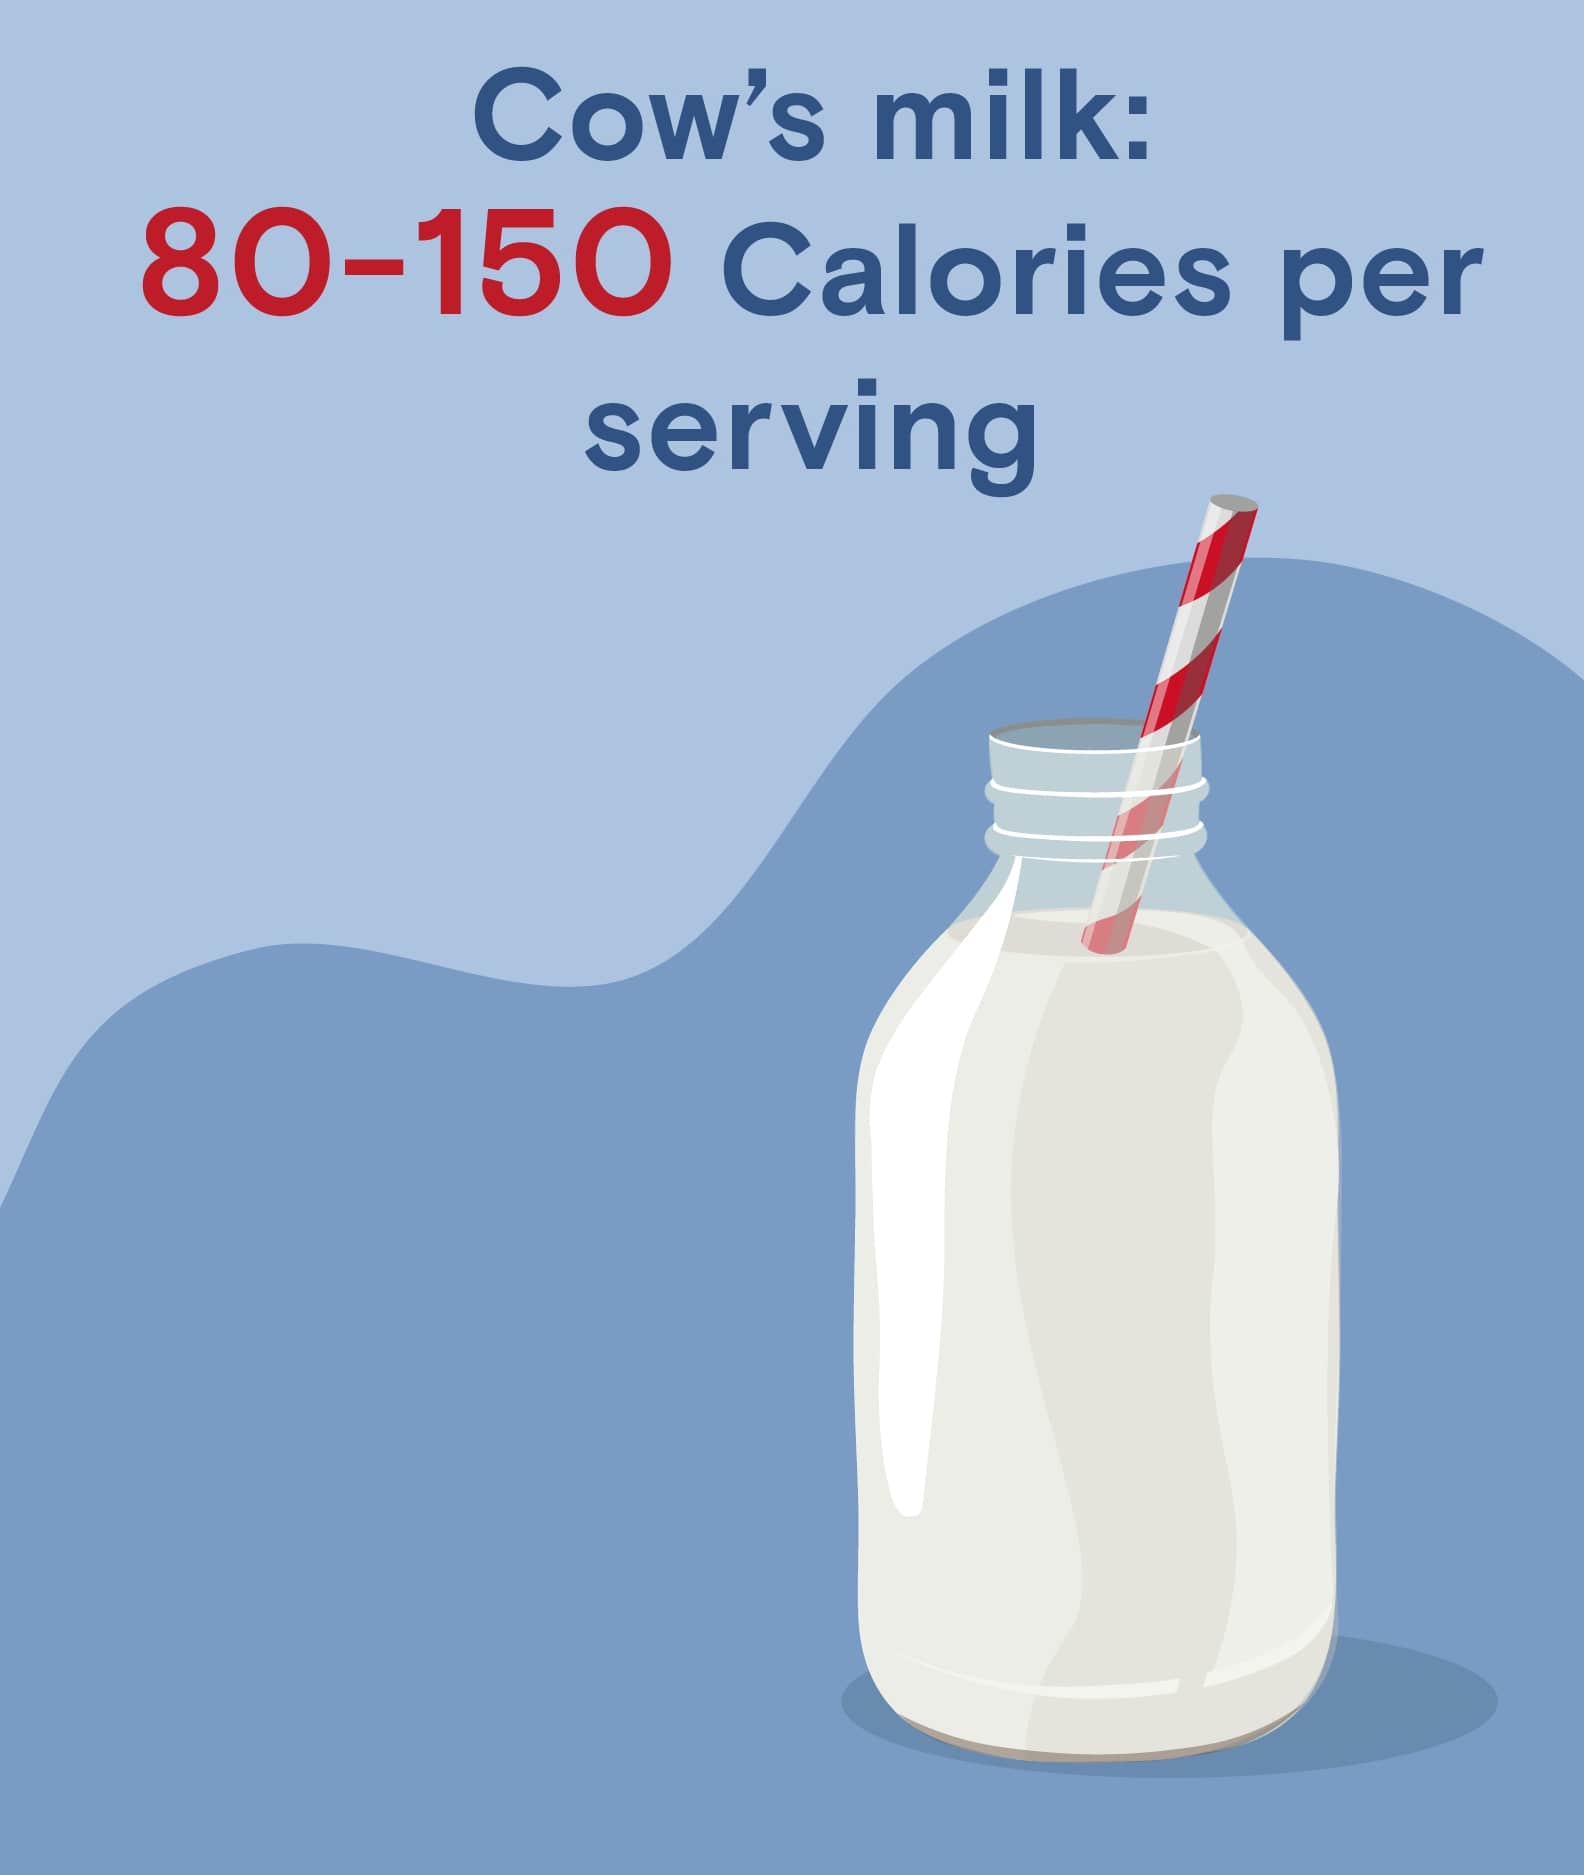 Cow's milk contains 80-150 calories per serving